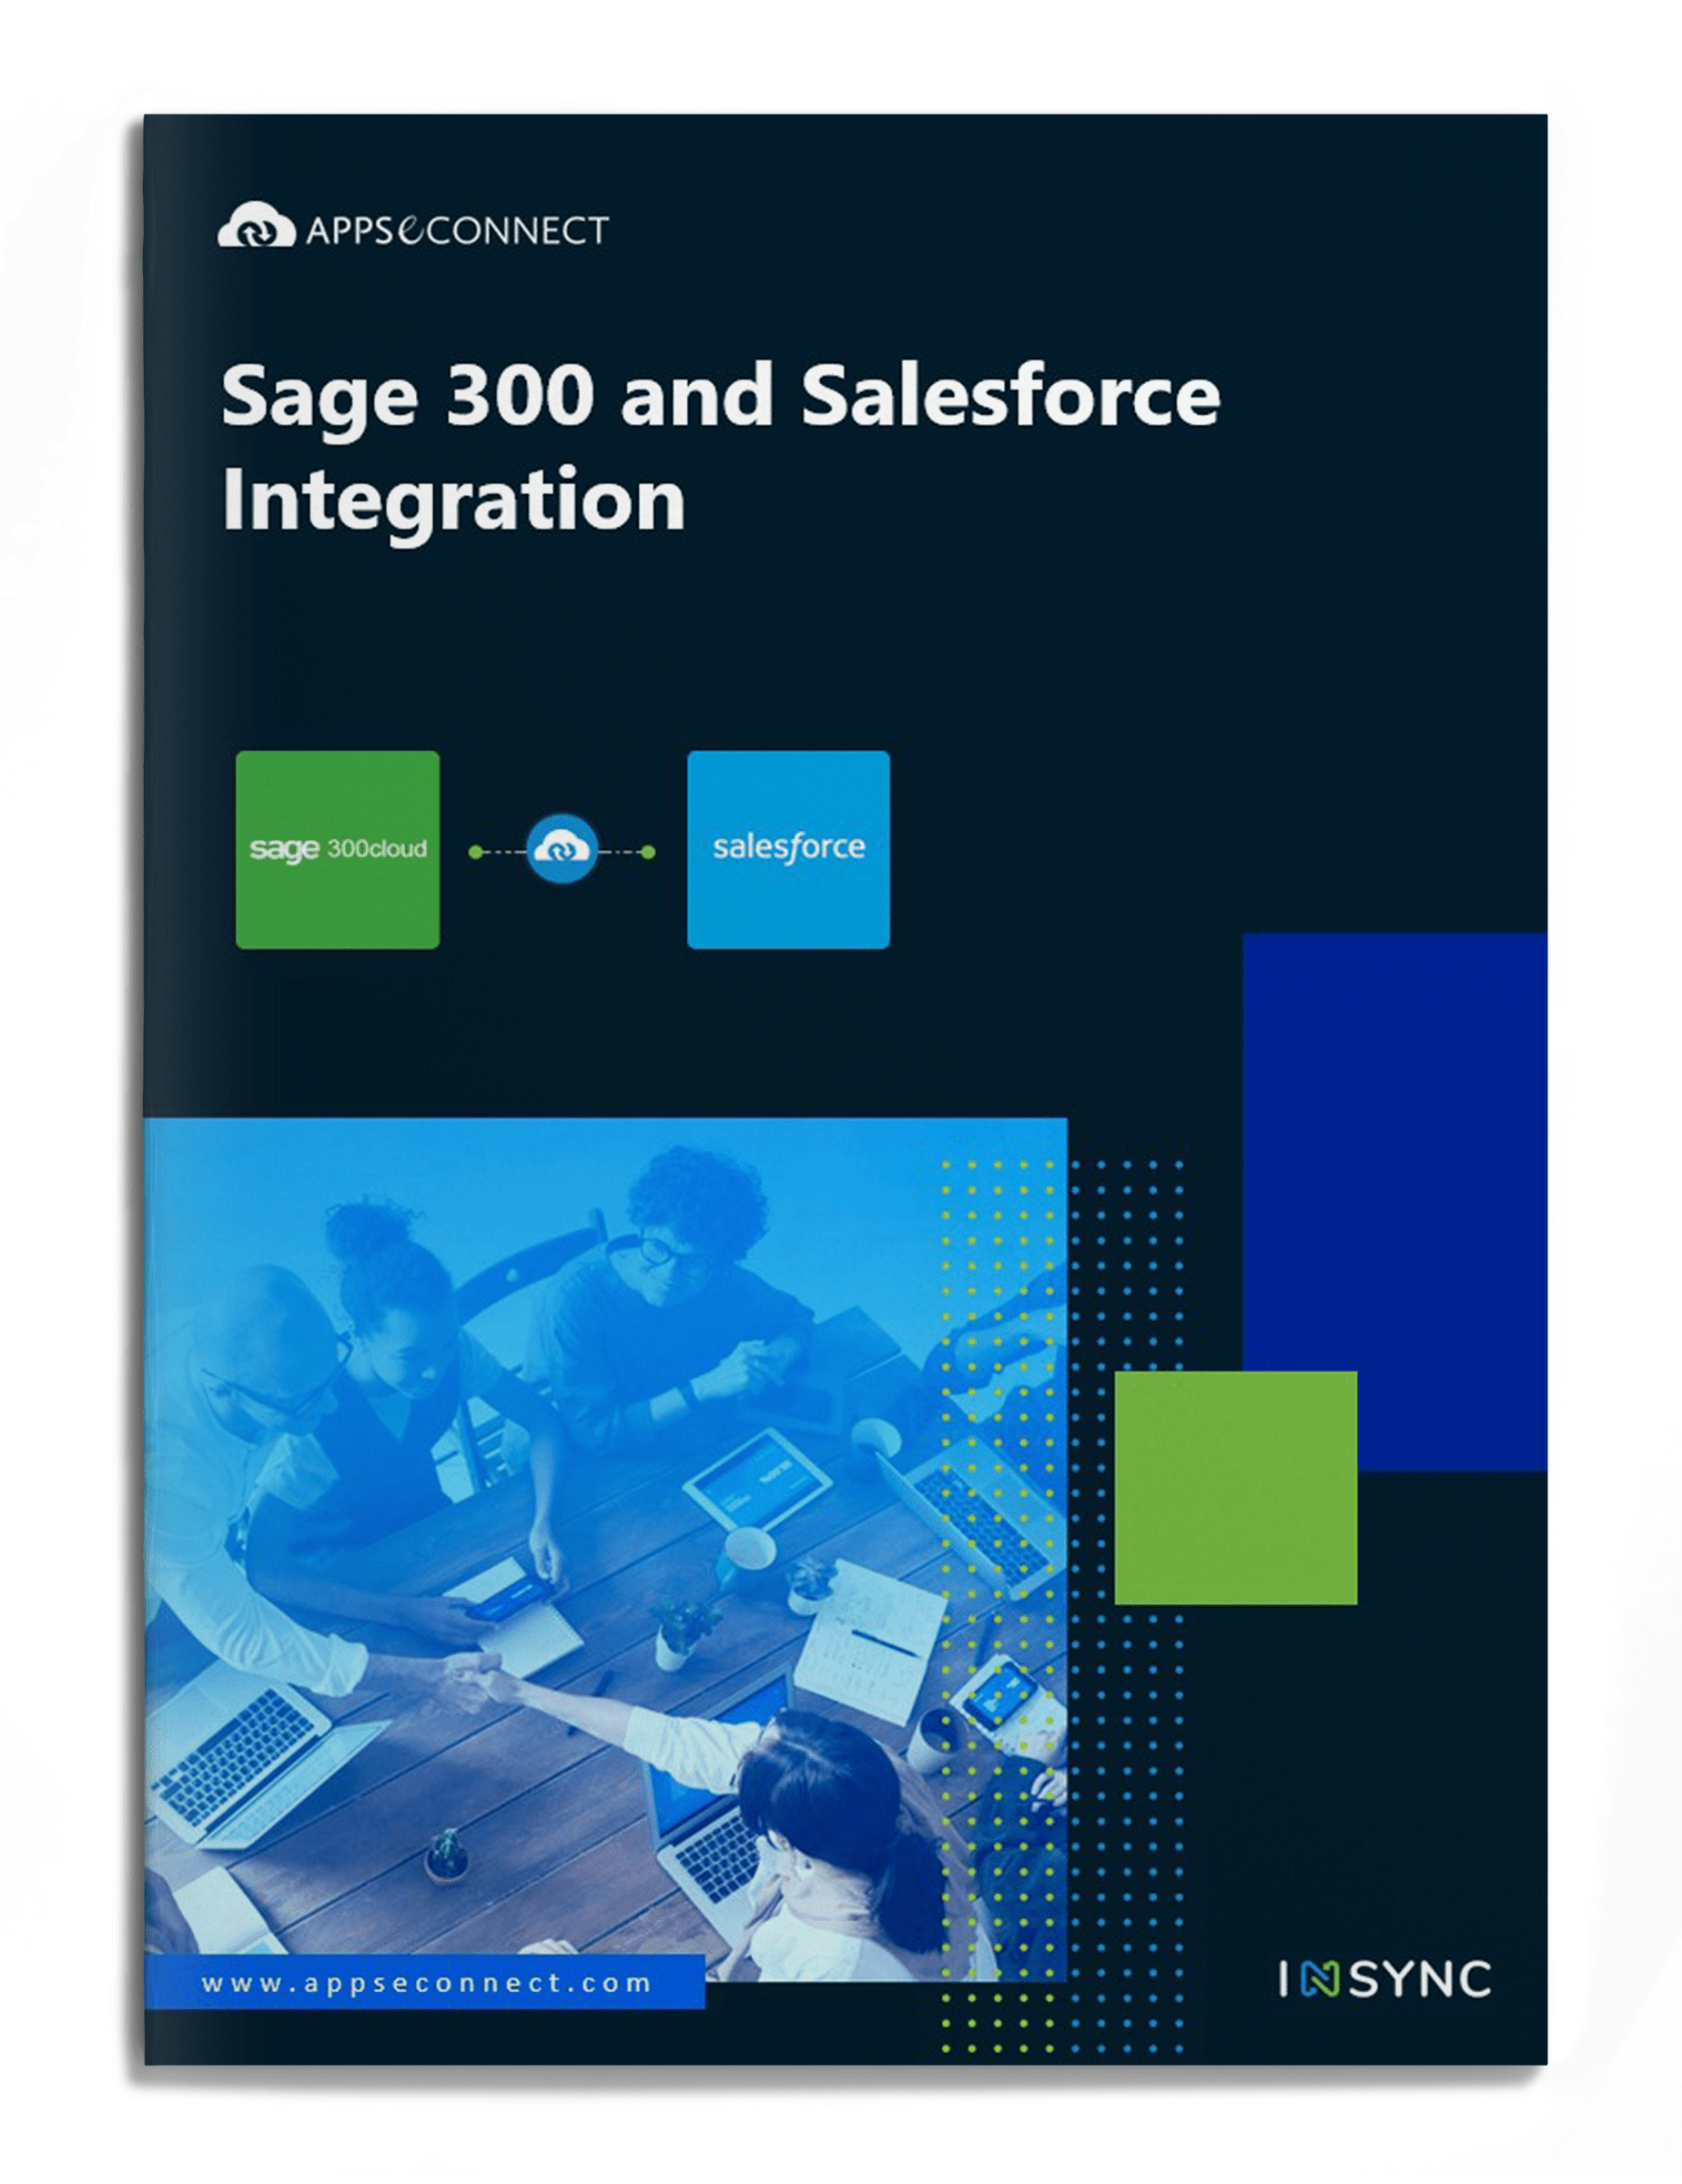 Sage 300 and Salesforce Integration Brochure